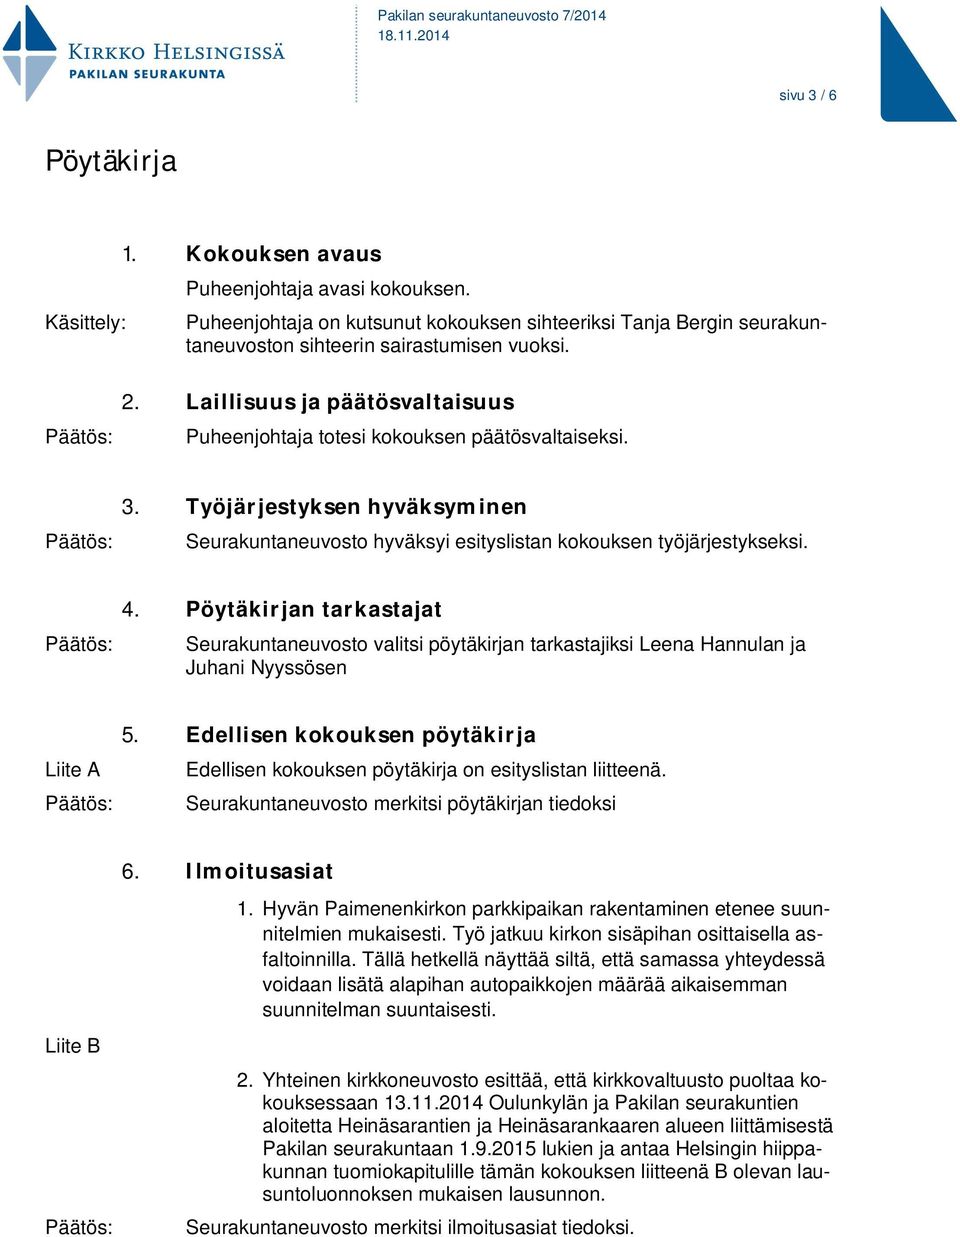 Pöytäkirjan tarkastajat Seurakuntaneuvosto valitsi pöytäkirjan tarkastajiksi Leena Hannulan ja Juhani Nyyssösen Liite A 5.